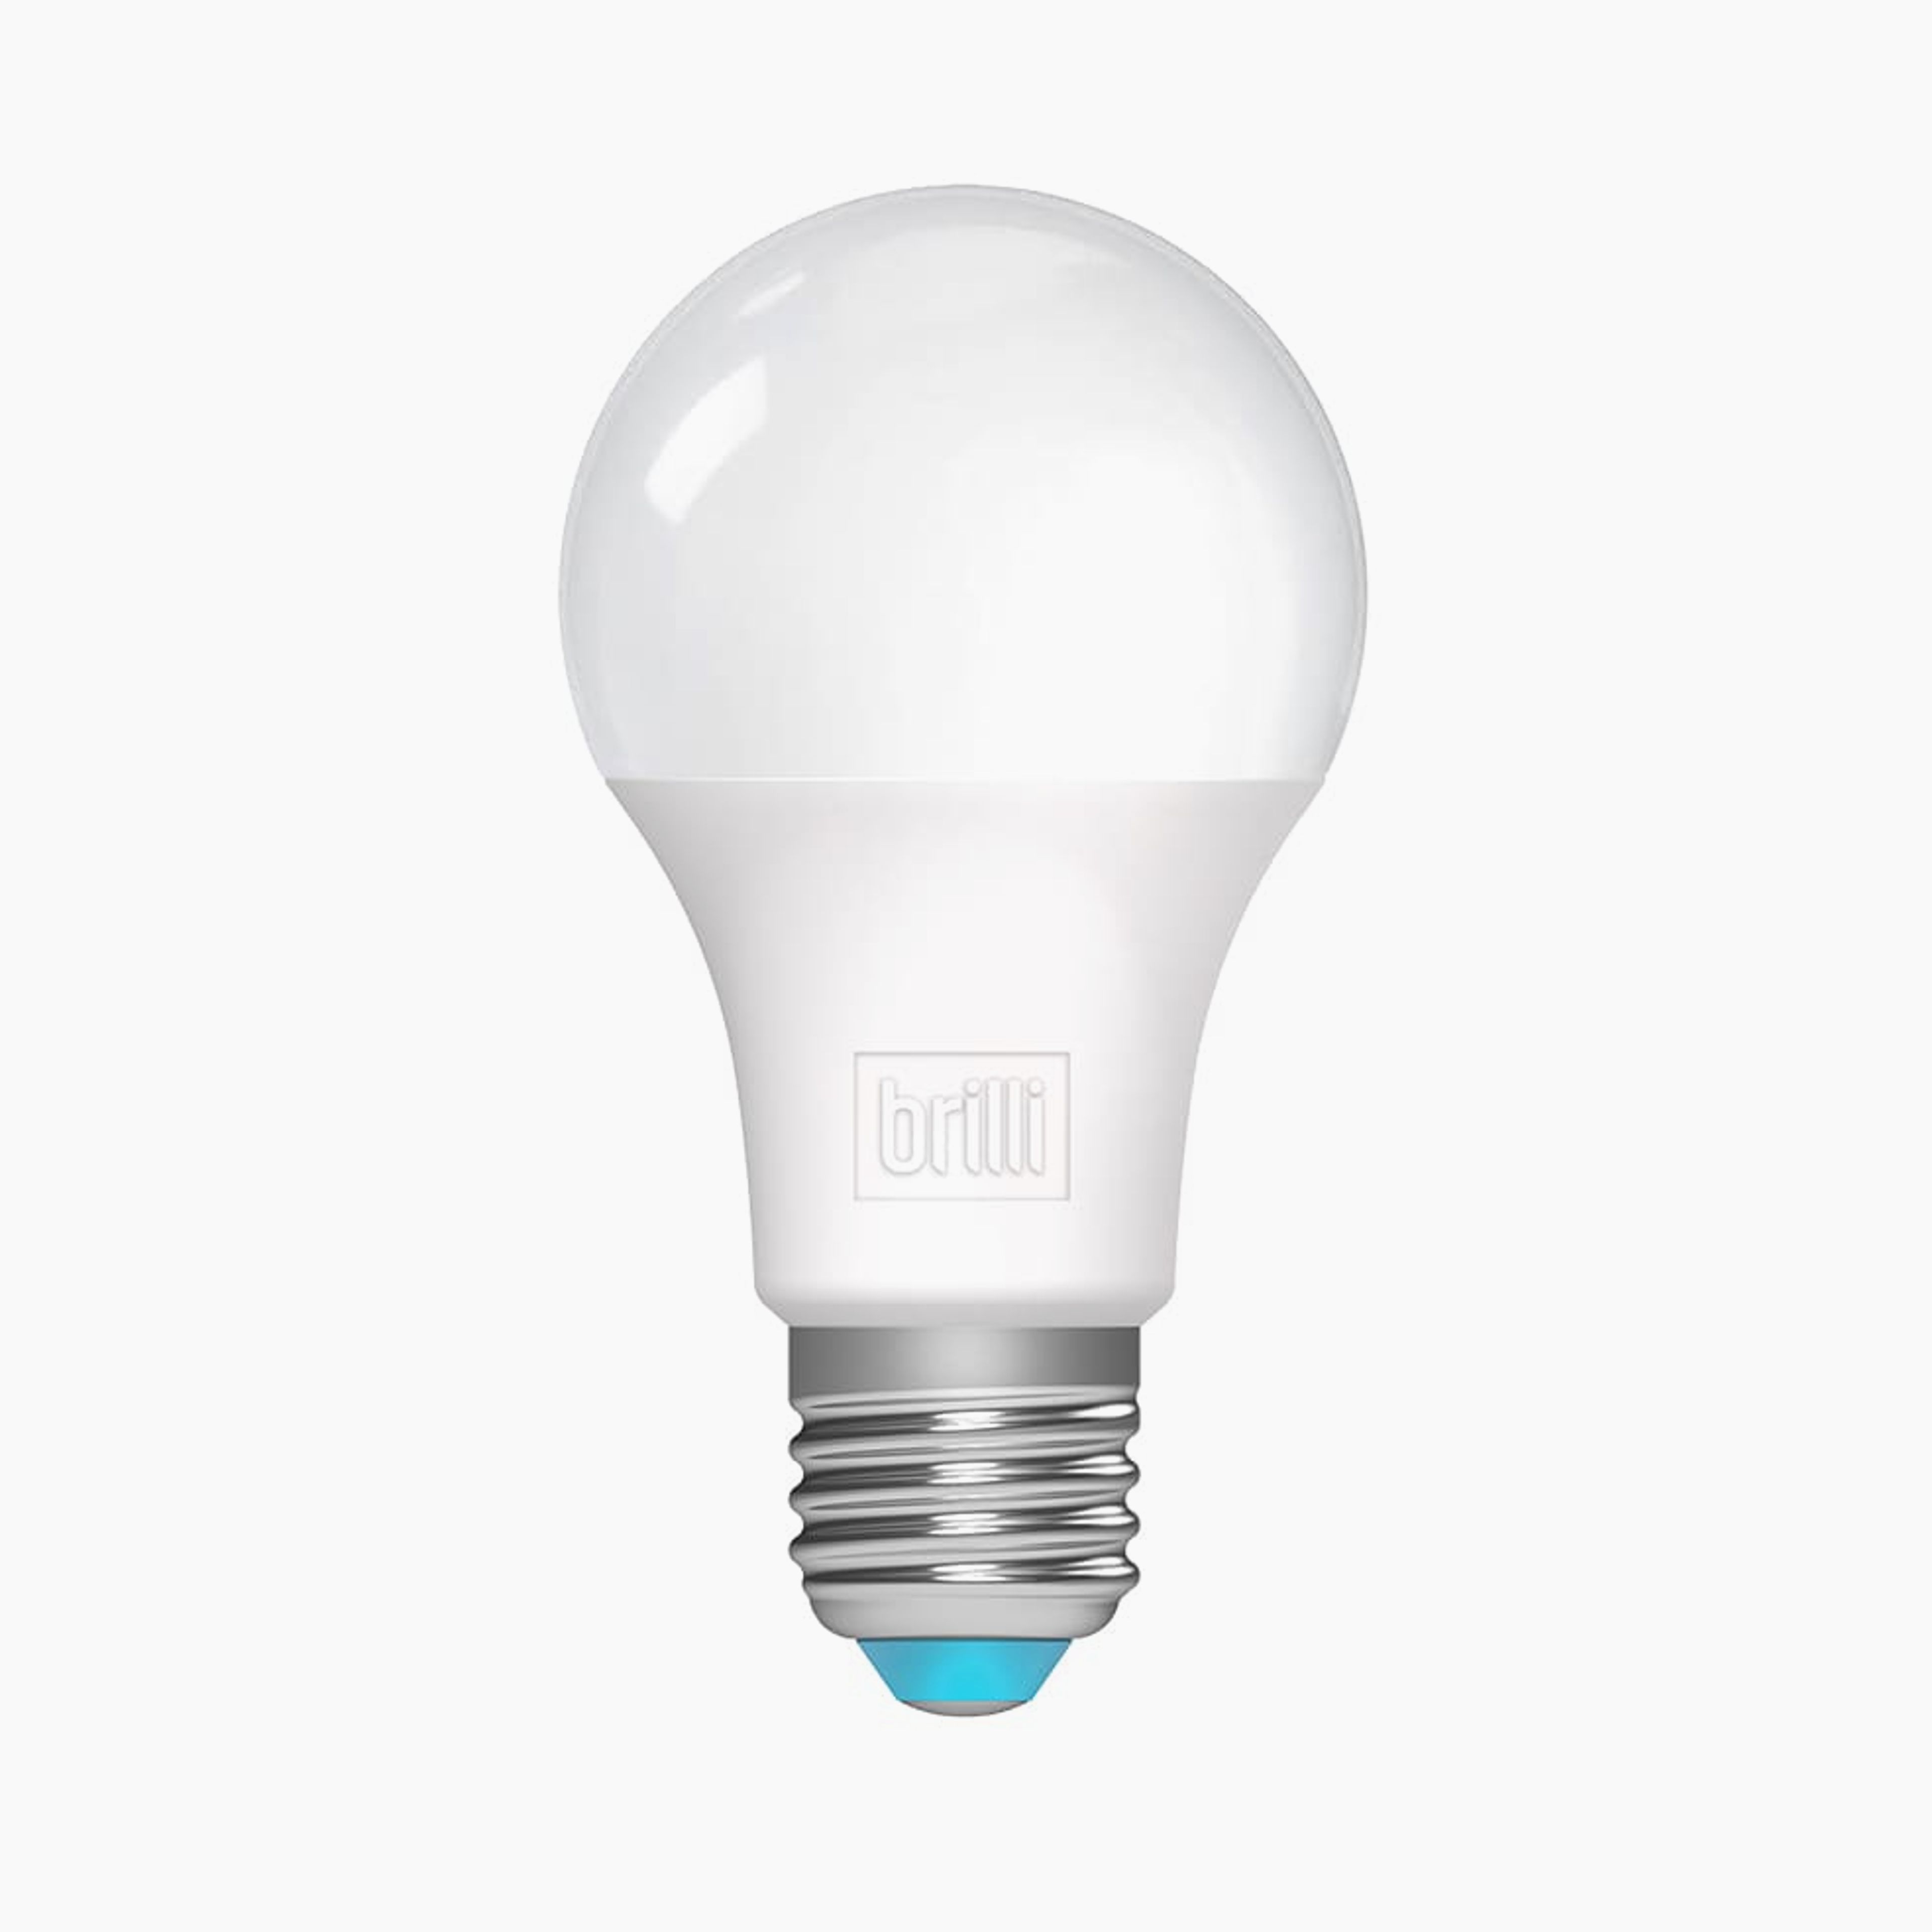 Charge Up 75w LED Light Bulbs